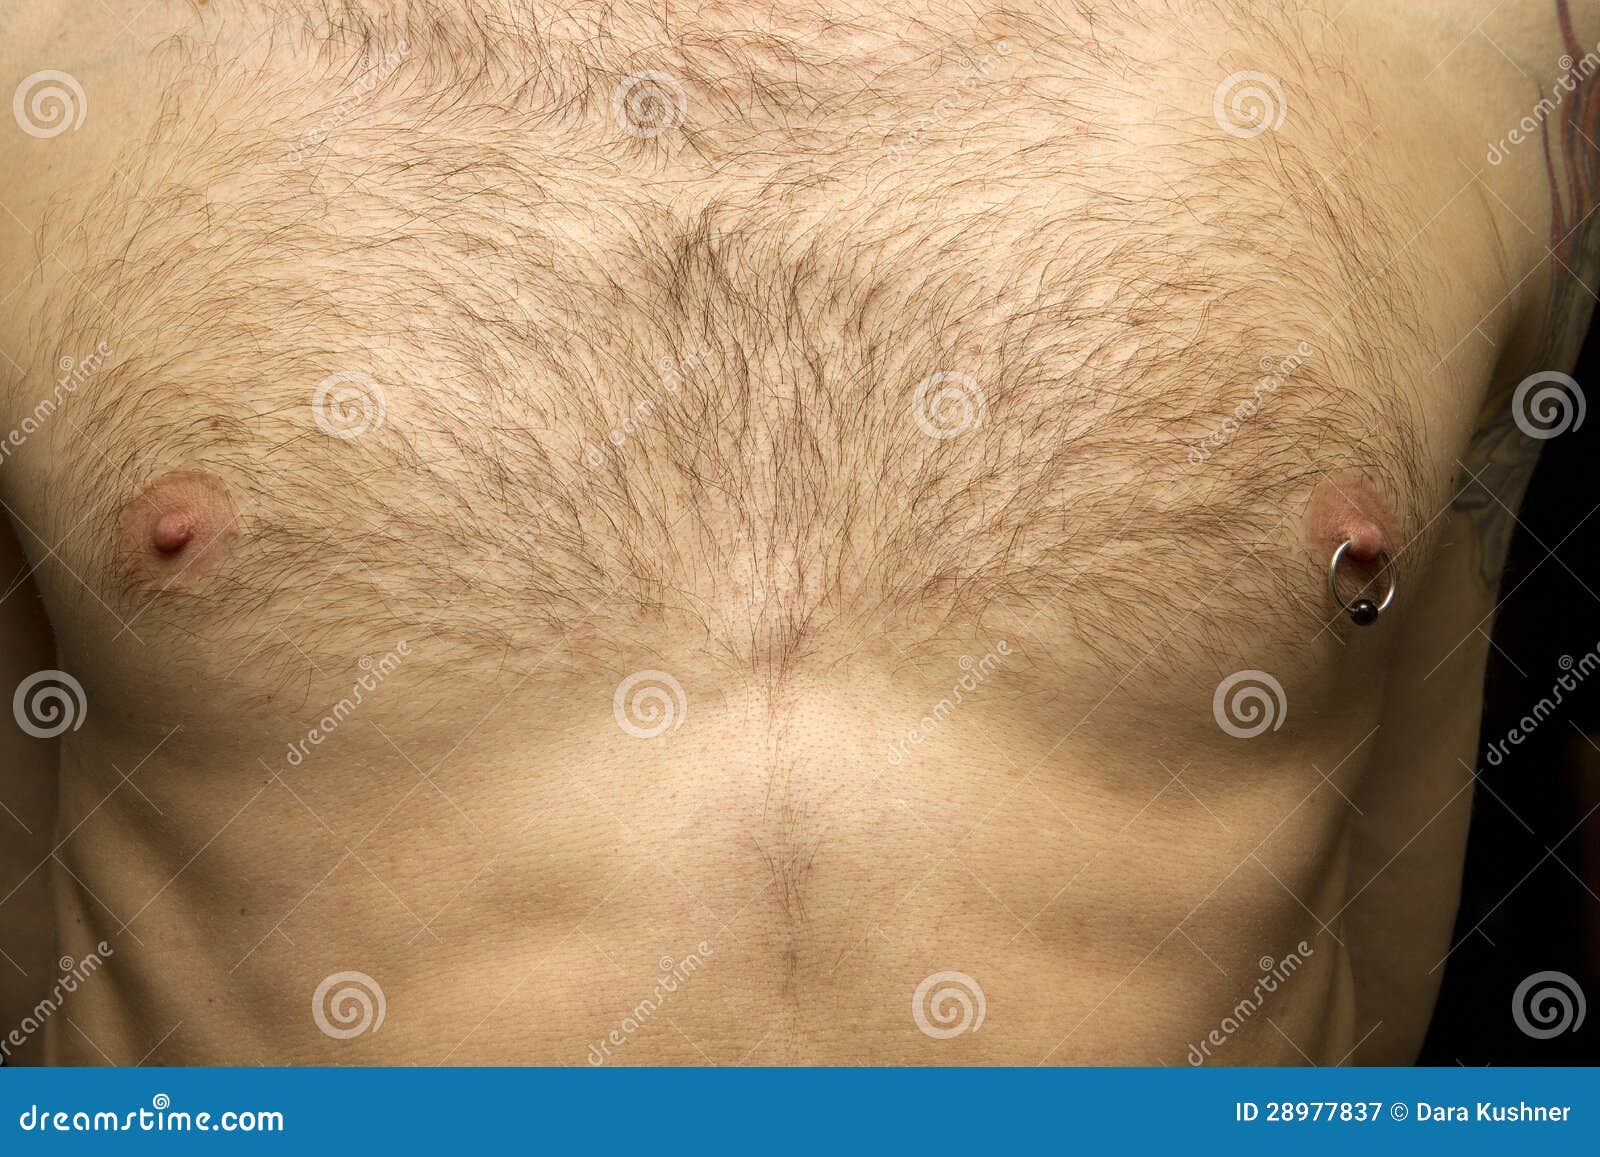 увеличенный сосок груди у мужчин фото 59